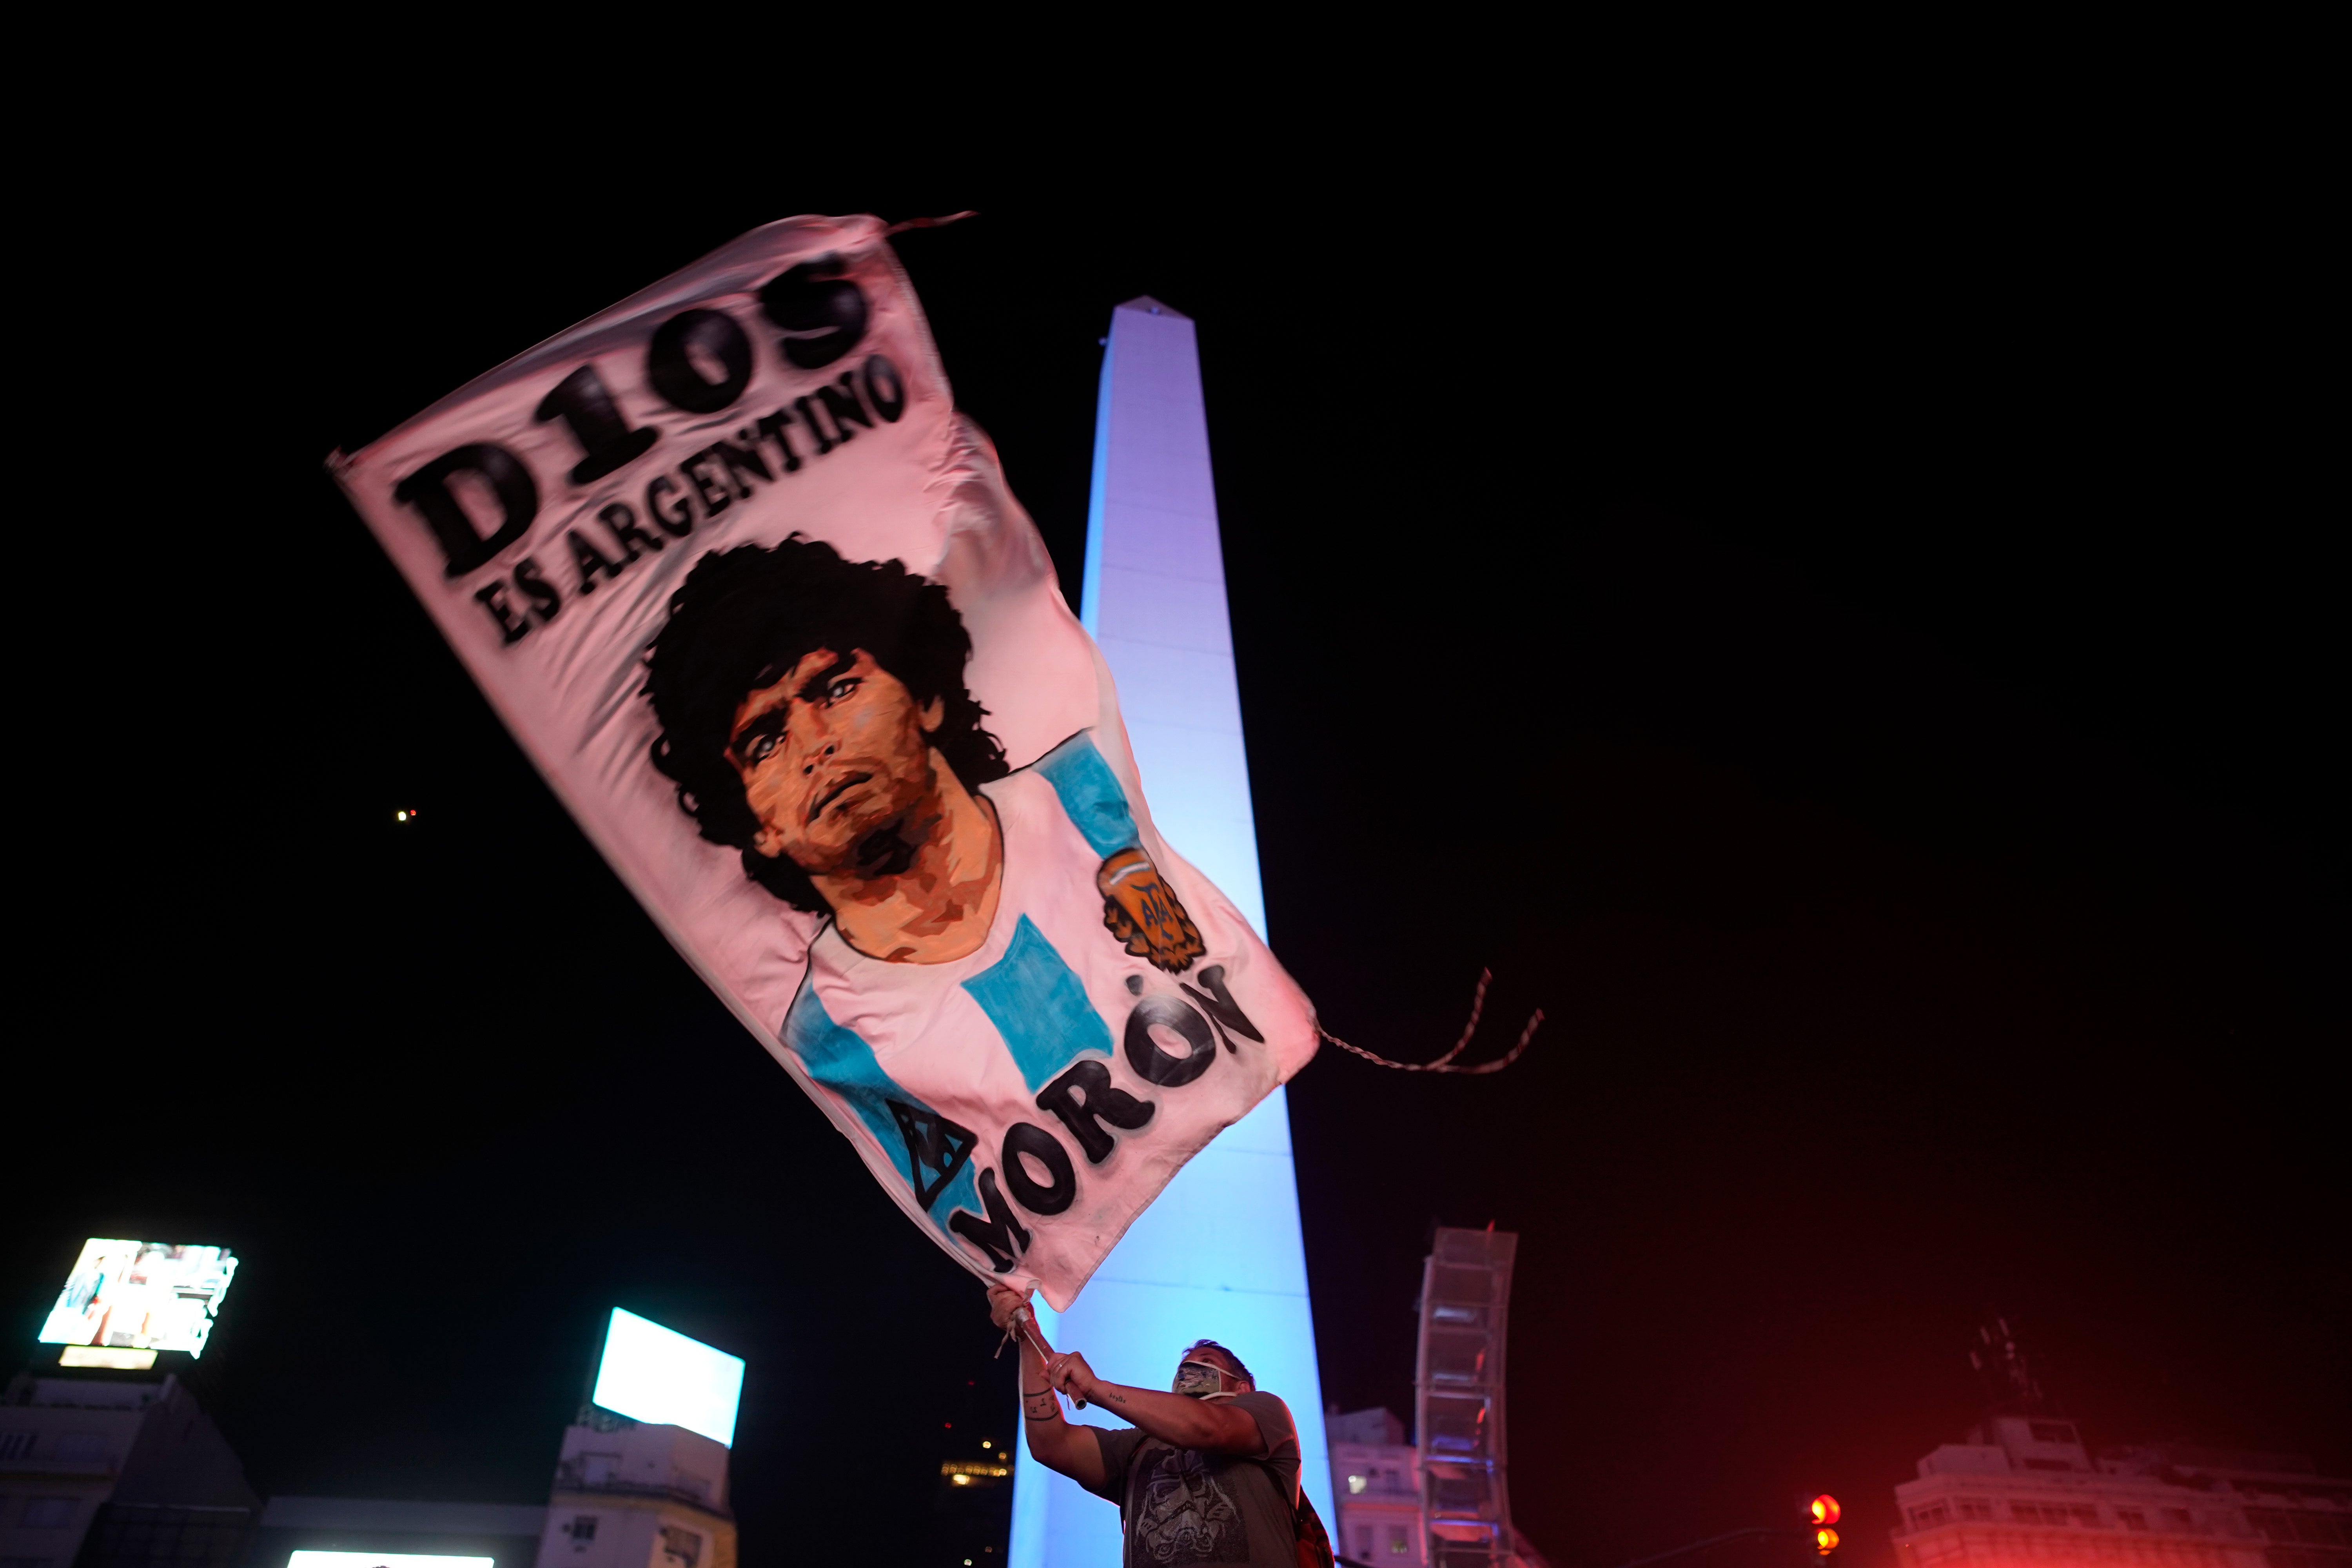 Diego Armando Maradona murió en el 2020